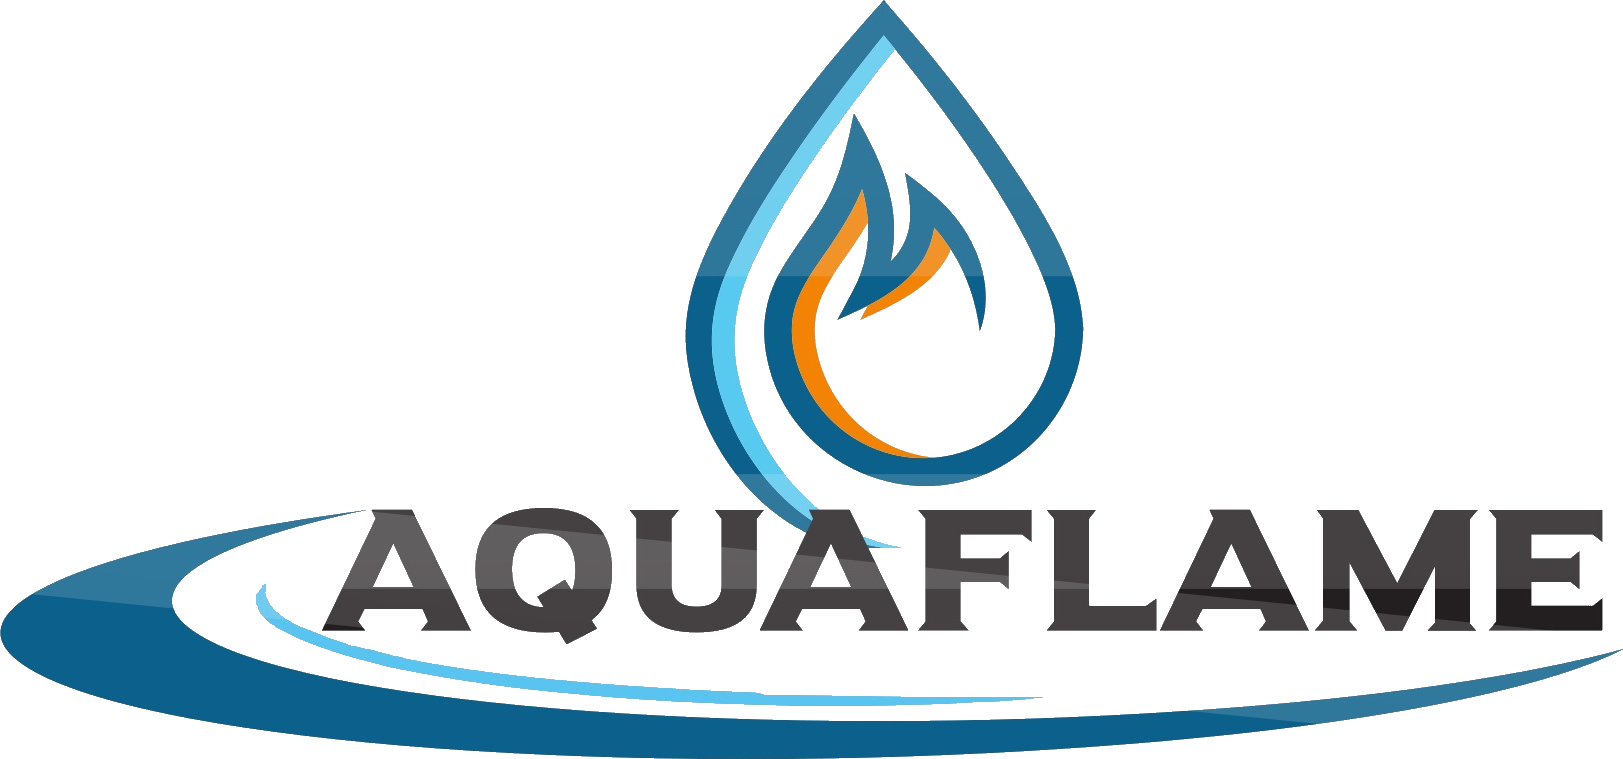 Aquaflame Heating and Cooling Ltd.